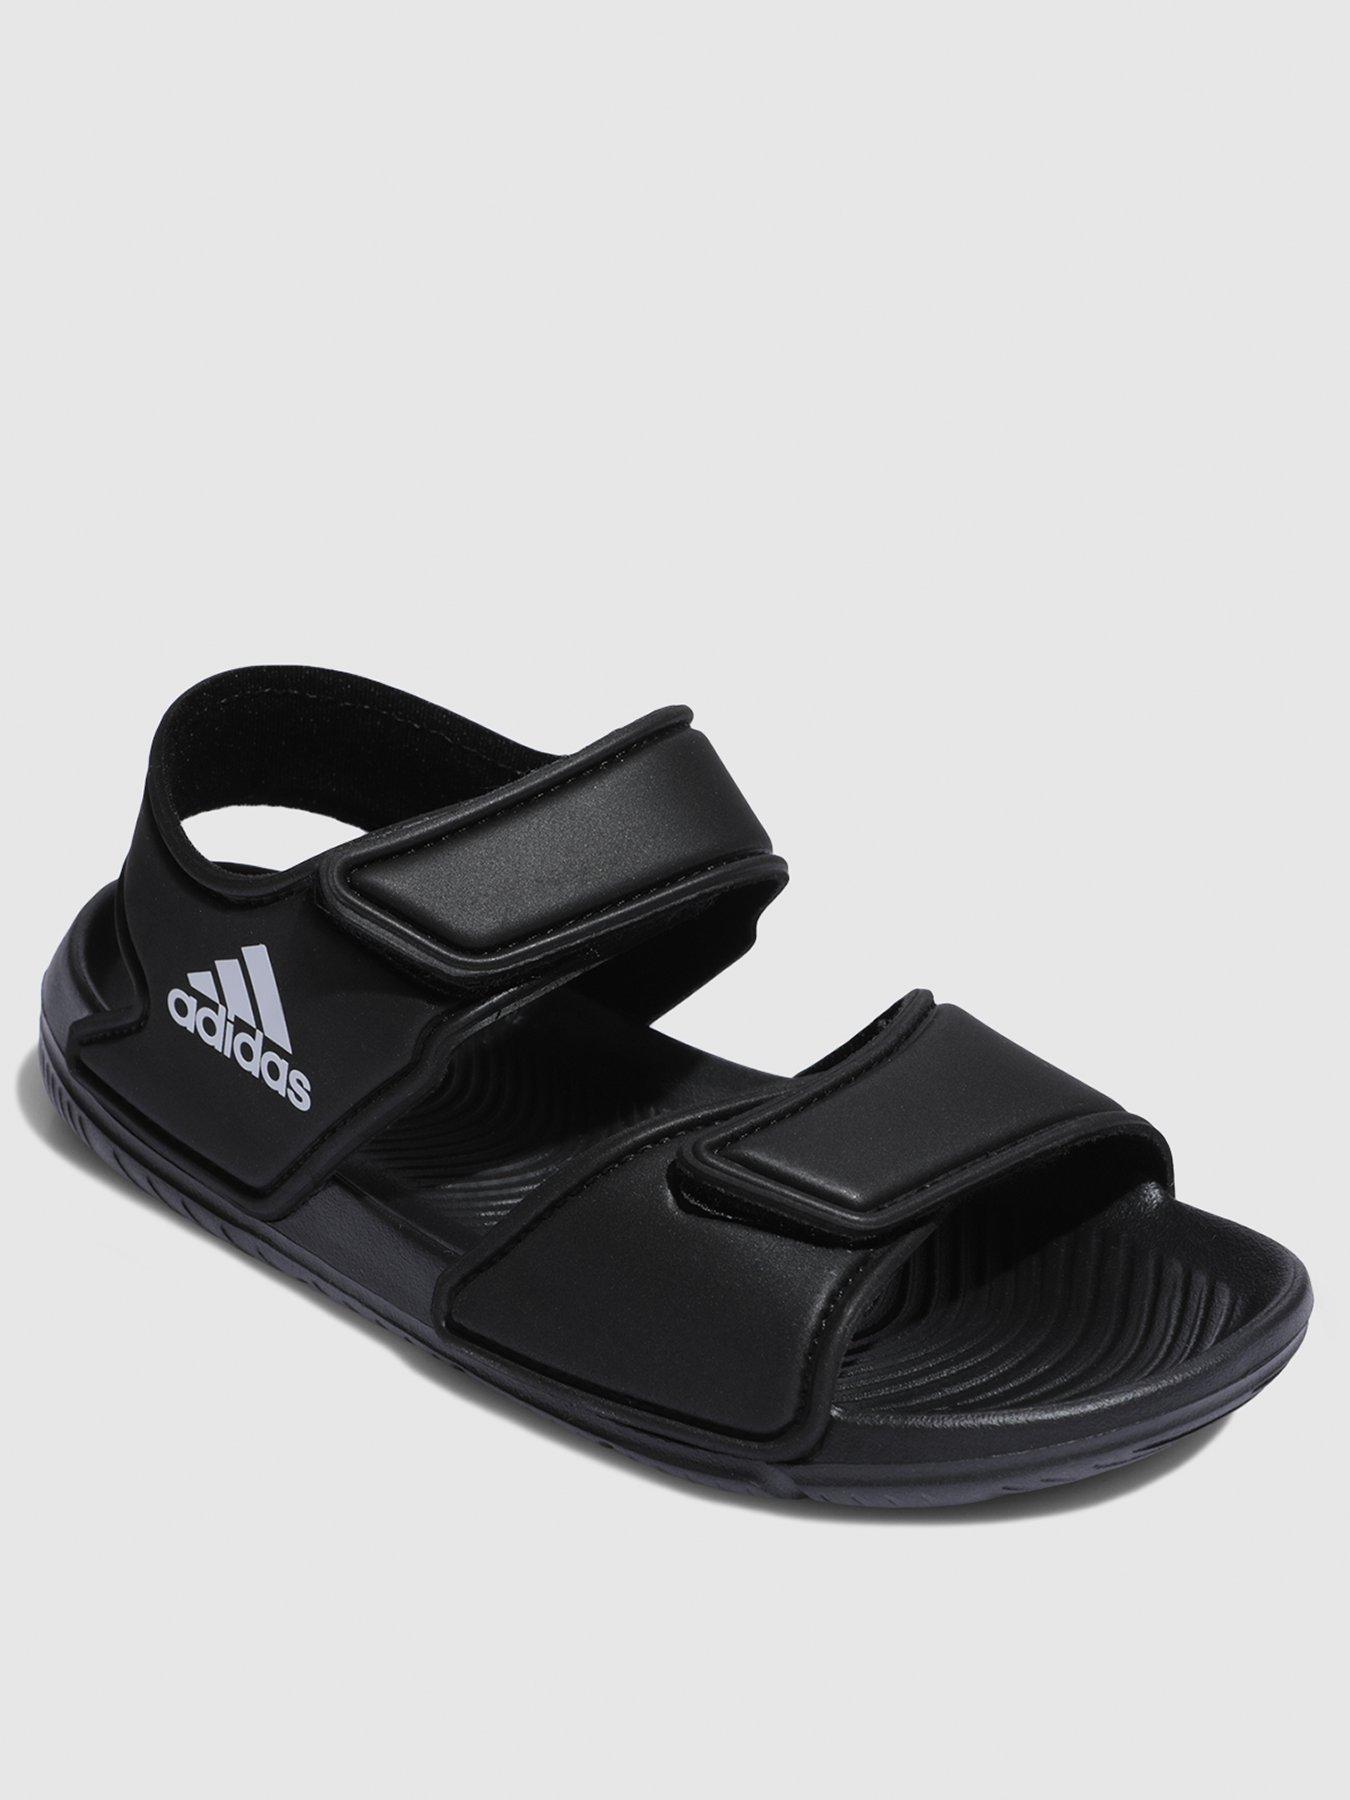 adidas sandal black